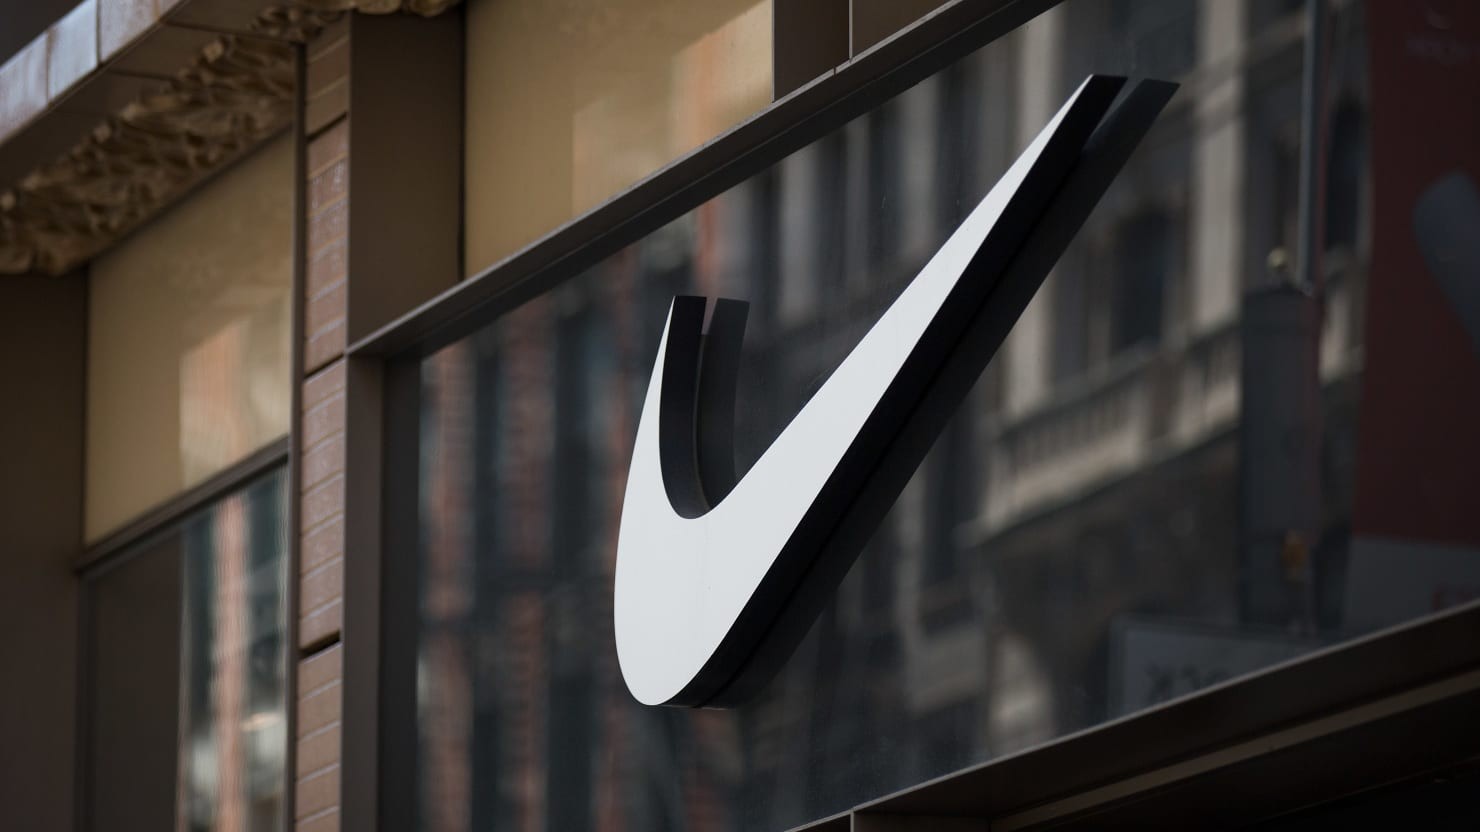 
Trước đây để thuận tiện hơn trong việc phân phối những sản phẩm của mình ra nhiều nước trên thế giới, Nike đã có một cách làm là đặt nhà máy phân phối độc lập tại những nước khác nhau.
